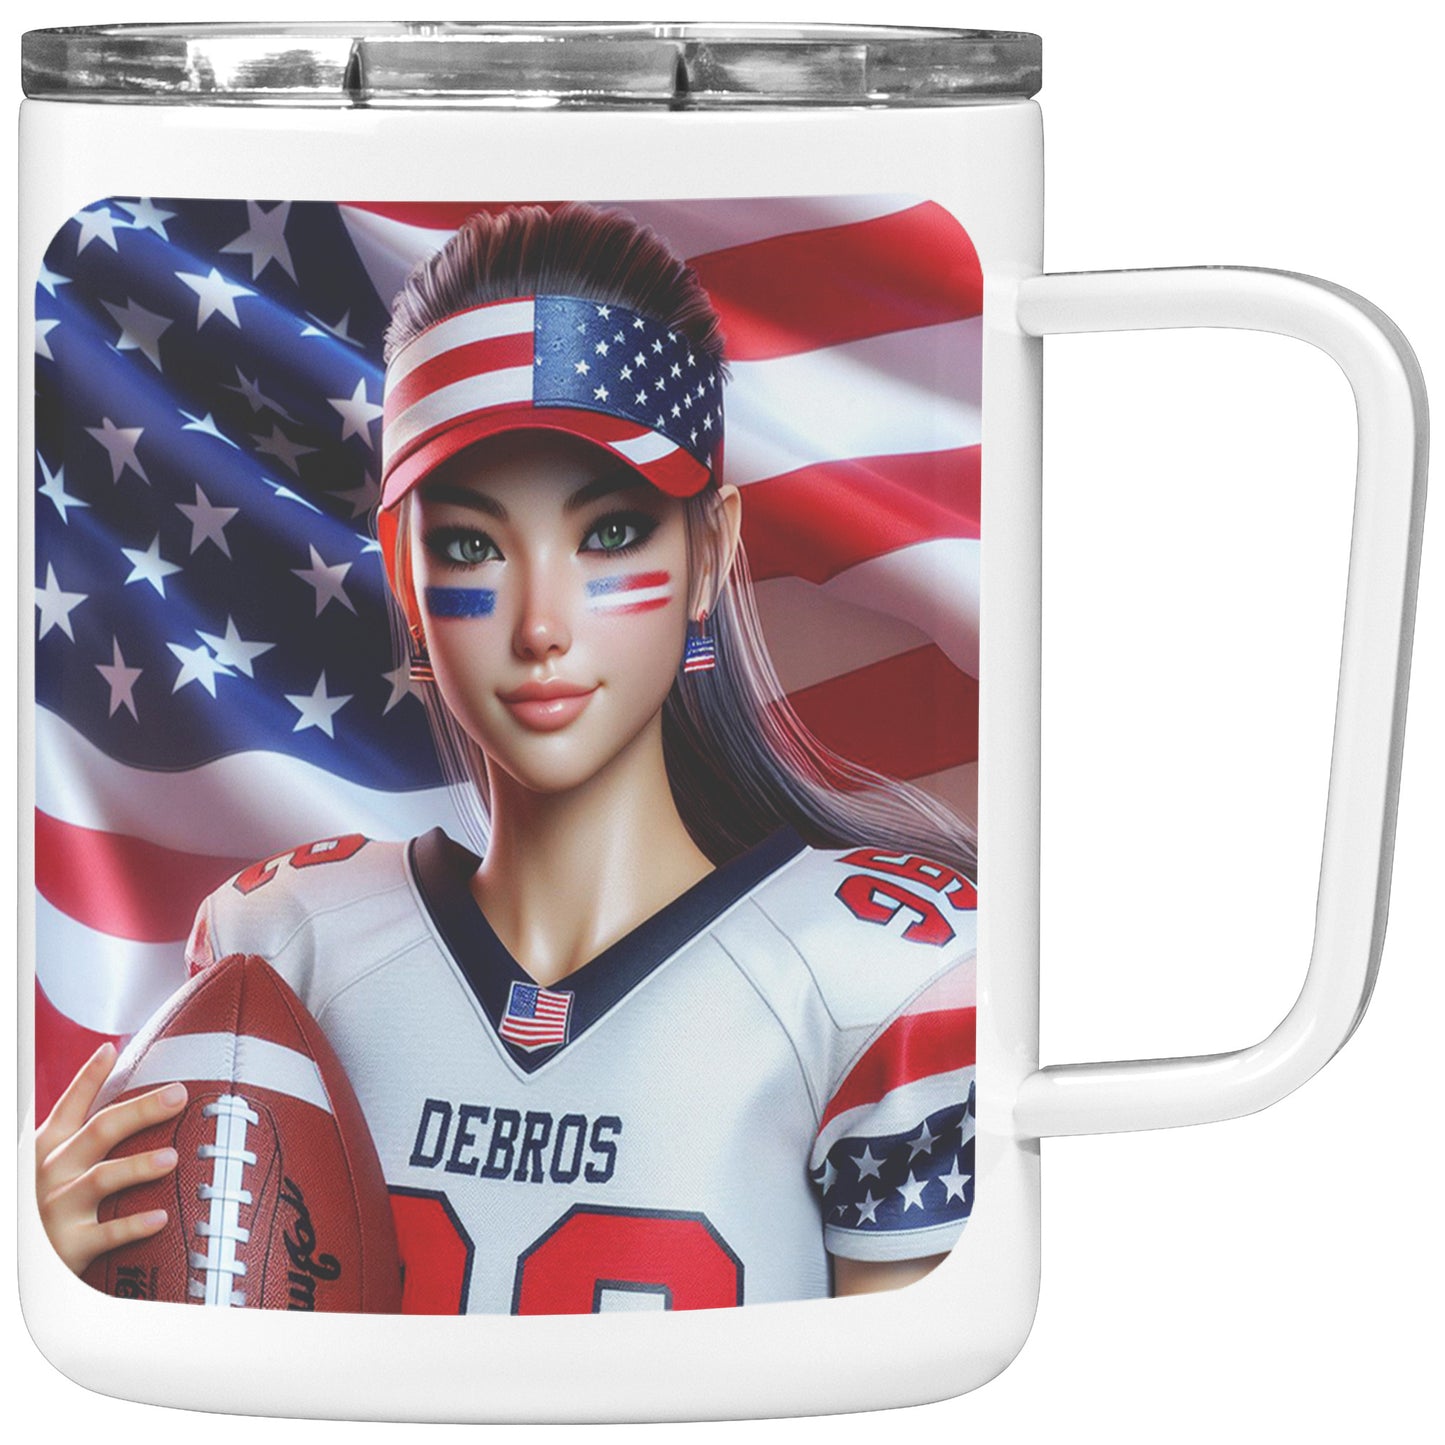 Woman Football Player - Insulated Coffee Mug #38